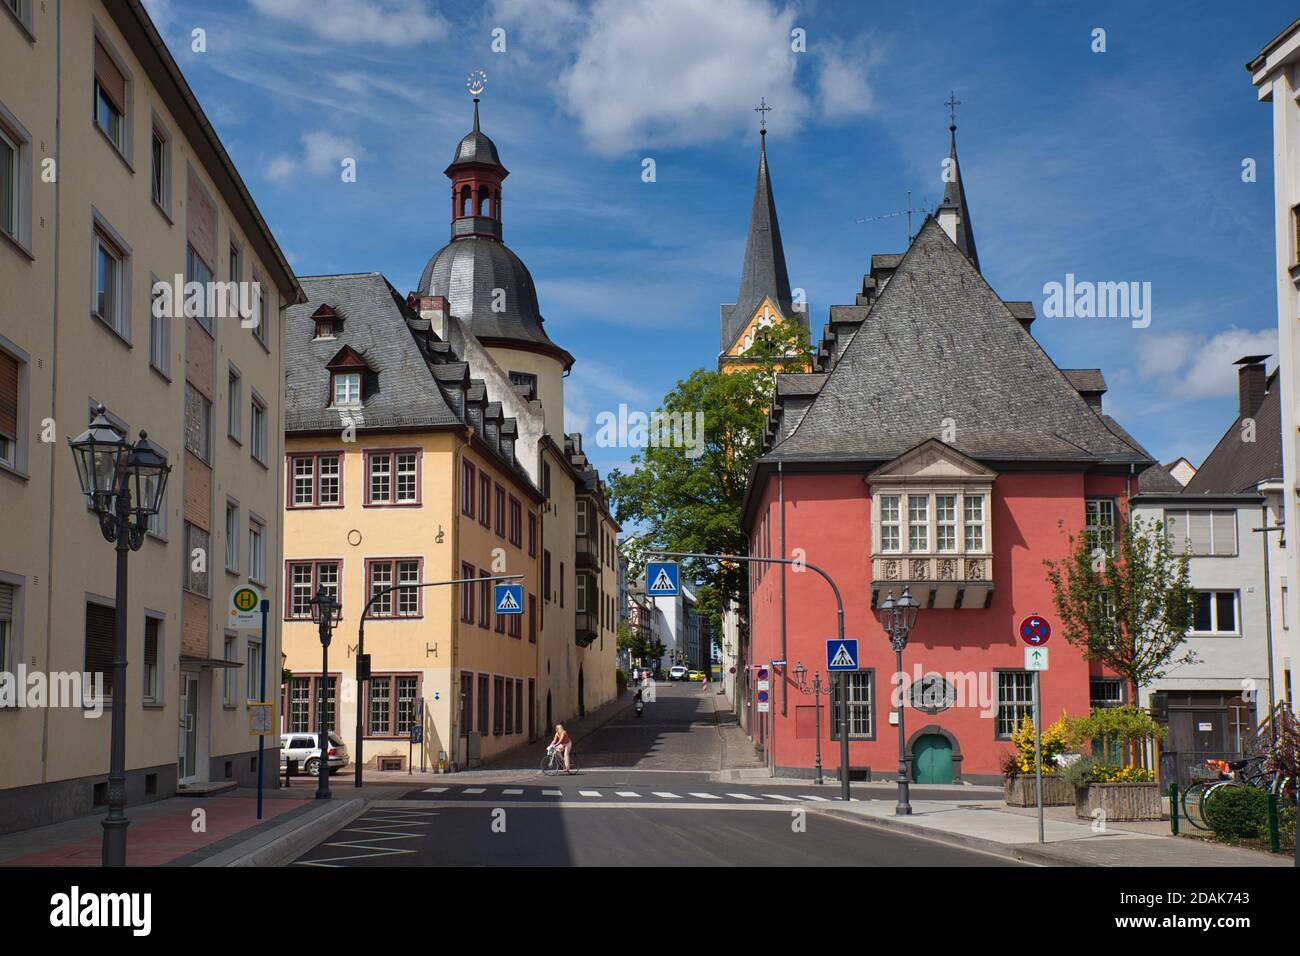 Una piazza dall'architettura colorata con strade che conducono nella città di Coblenza, vicino al fiume Reno, in Germania Foto Stock